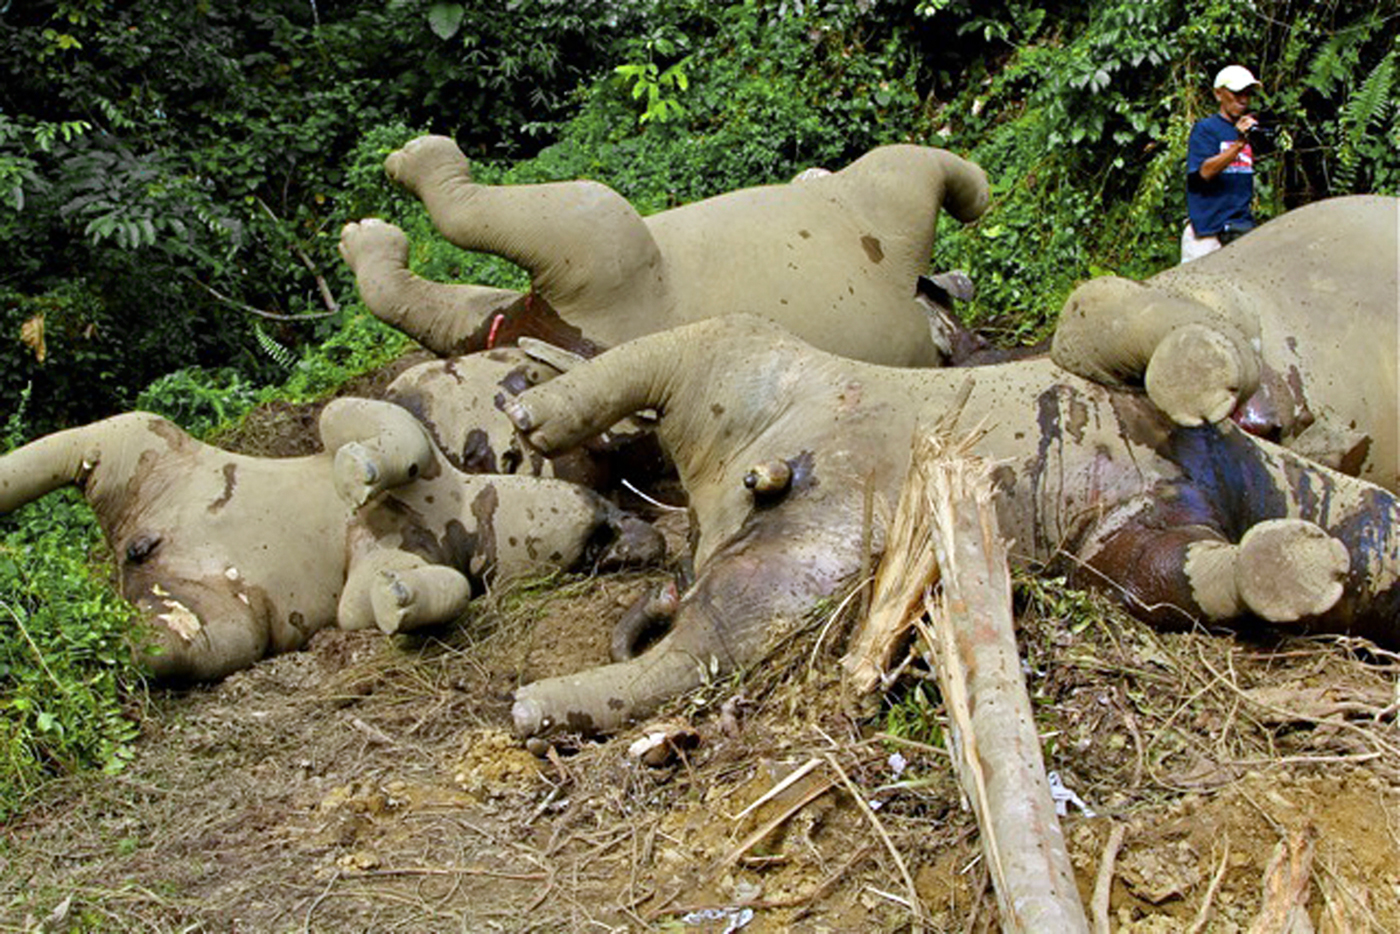 Son 14 los elefantes pigmeos muertos, aparentemente envenenados